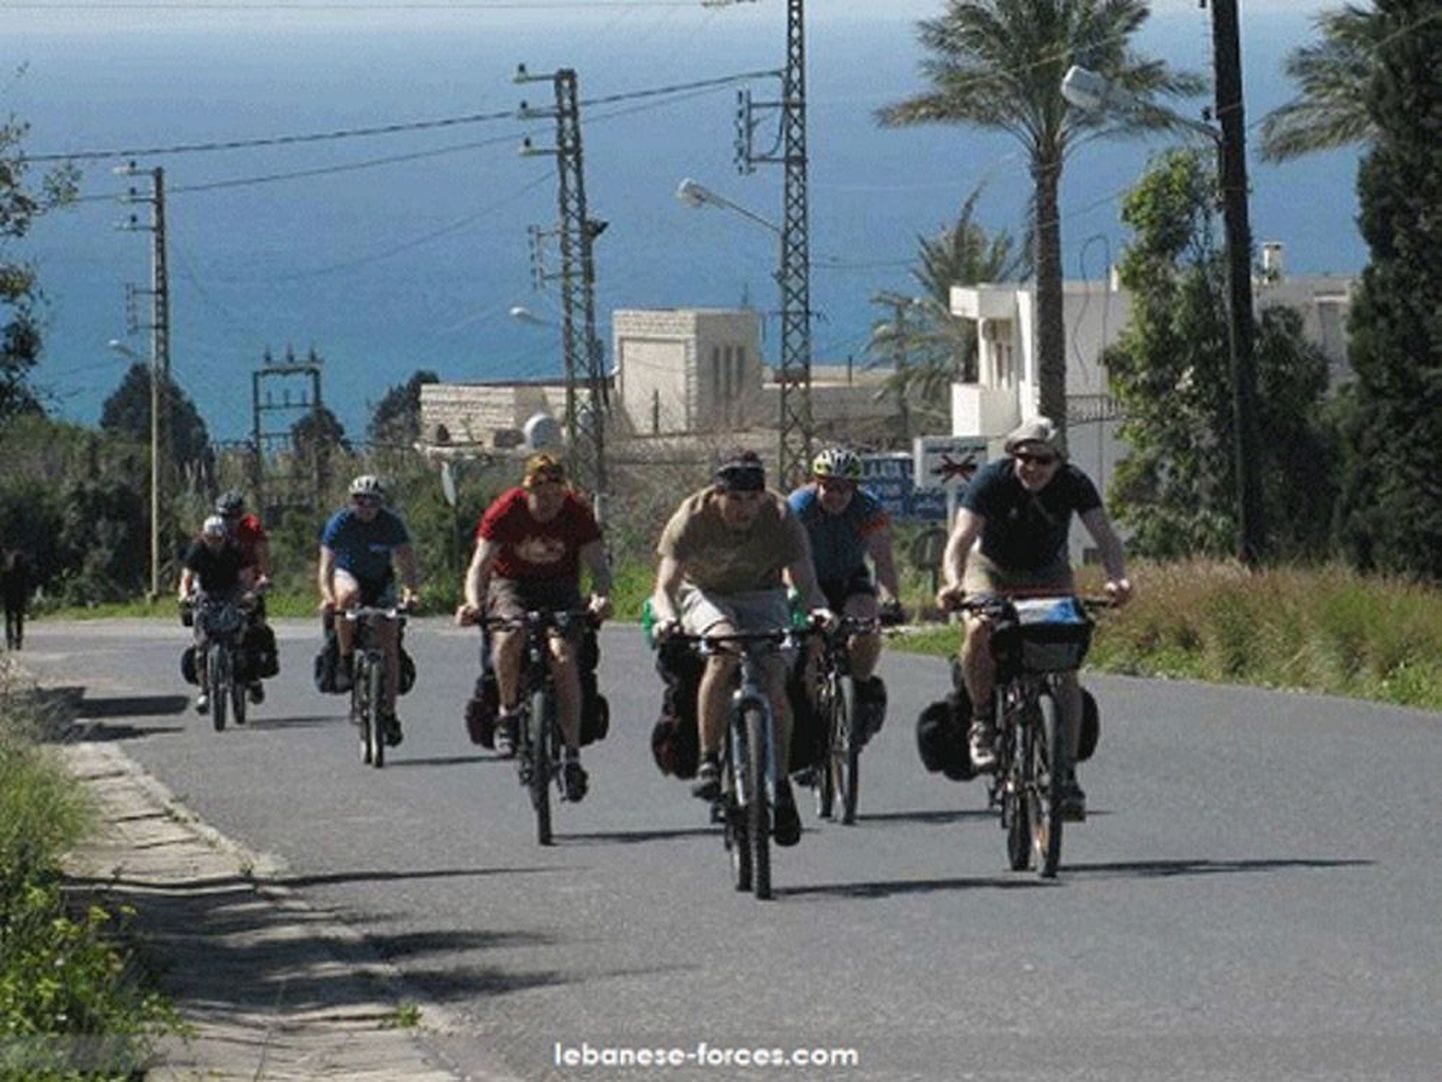 See foto Eesti jalgrattaturistidest on tehtud Liibanonis mõni aeg enne röövi, kuid kes on foto autor ja kuidas see Liibanoni meediaväljaannetesse sattus, ei ole toimetusele teada.